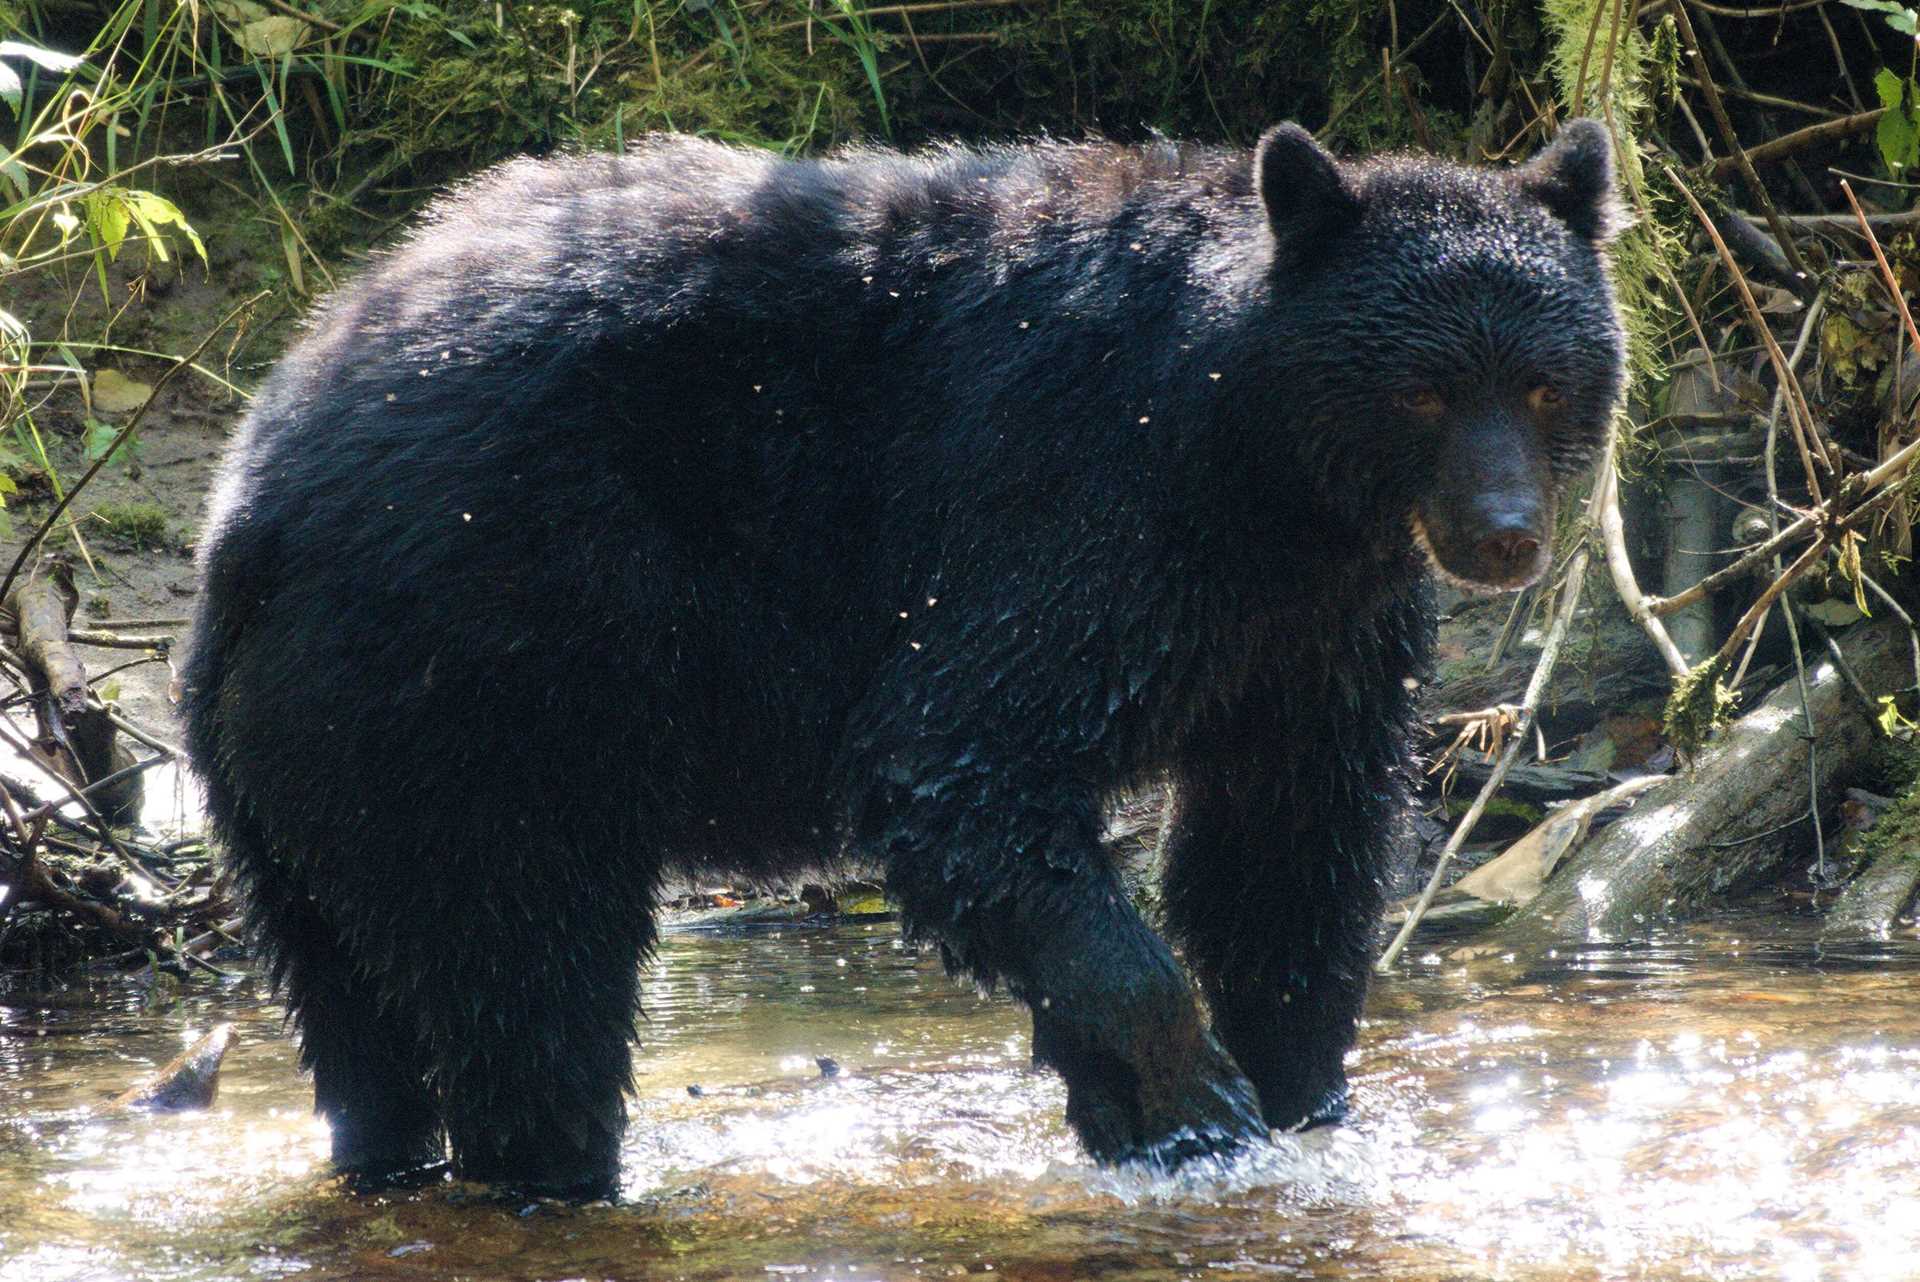 a black bear in water